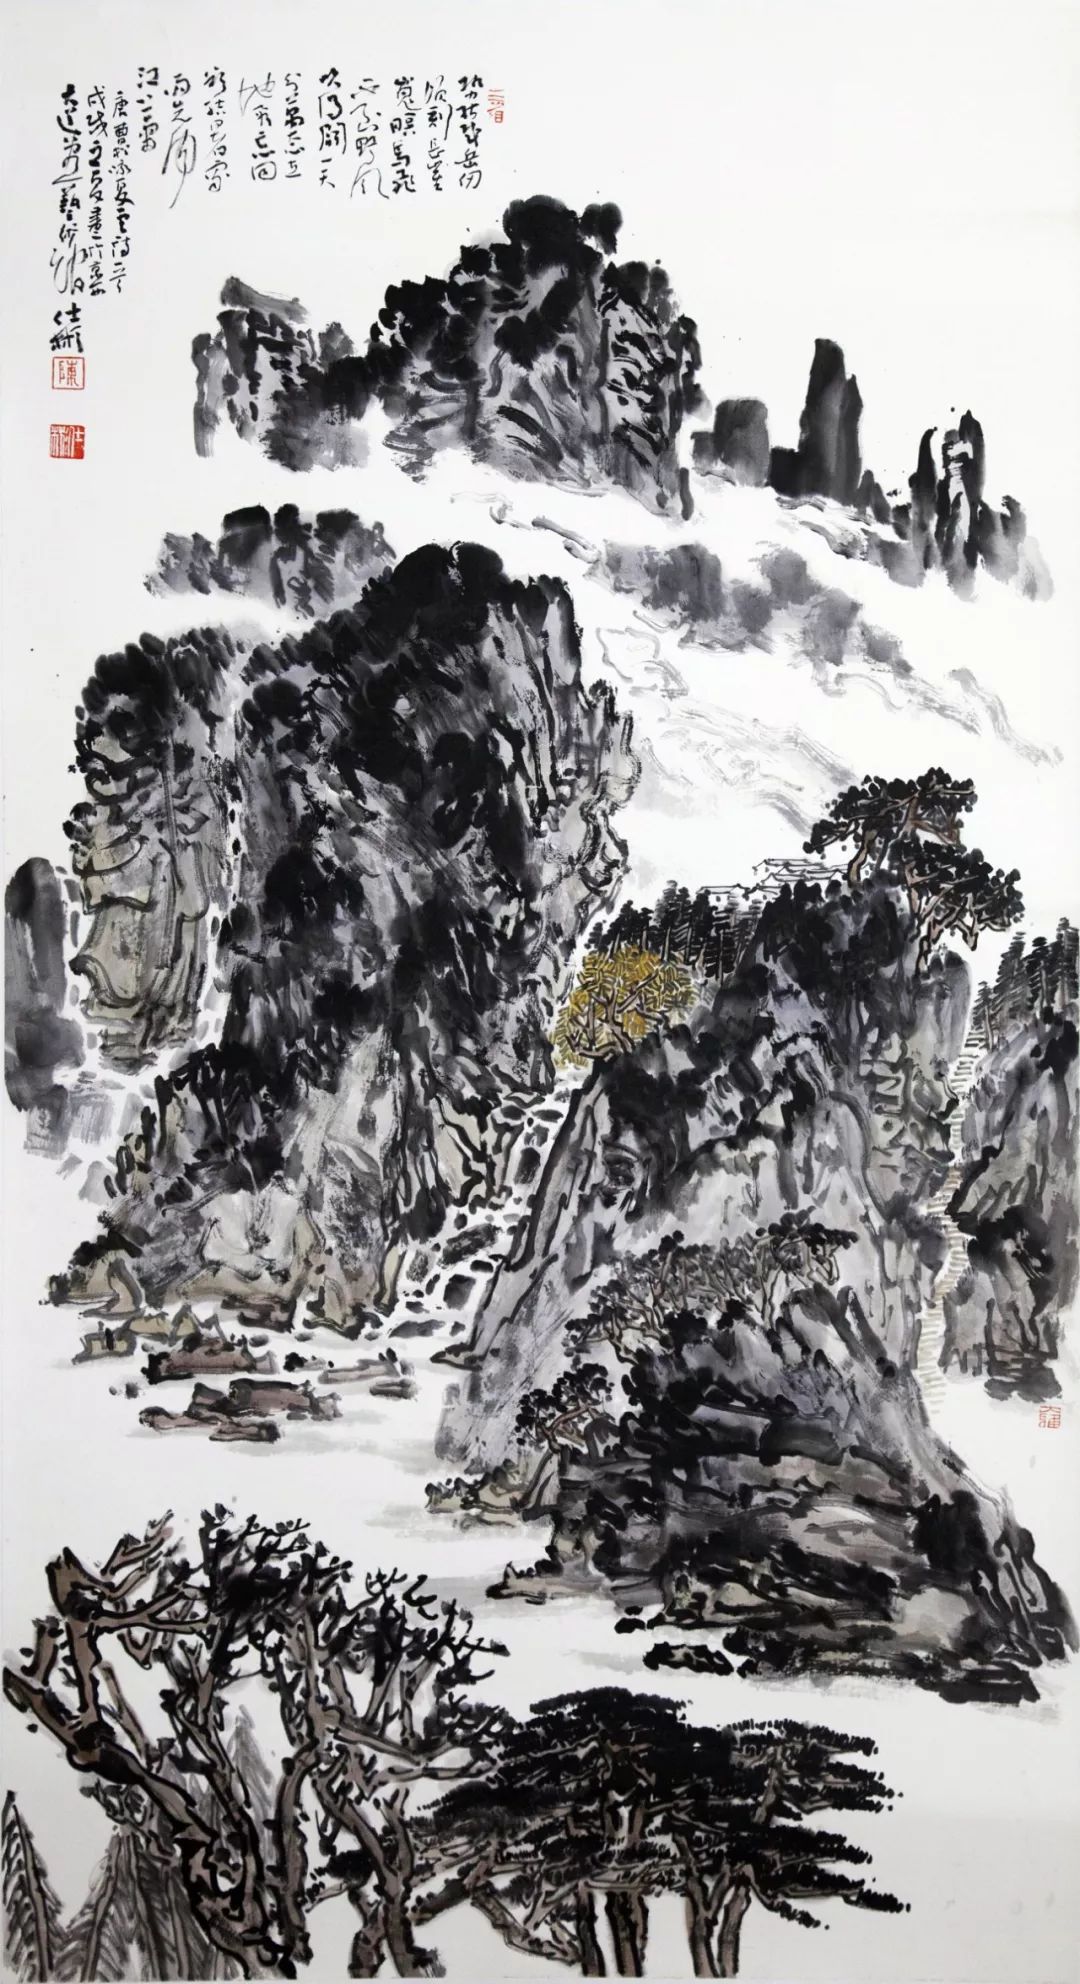 展览预告:传承与经典系列——陈仕彬山水画作品展(第二回)